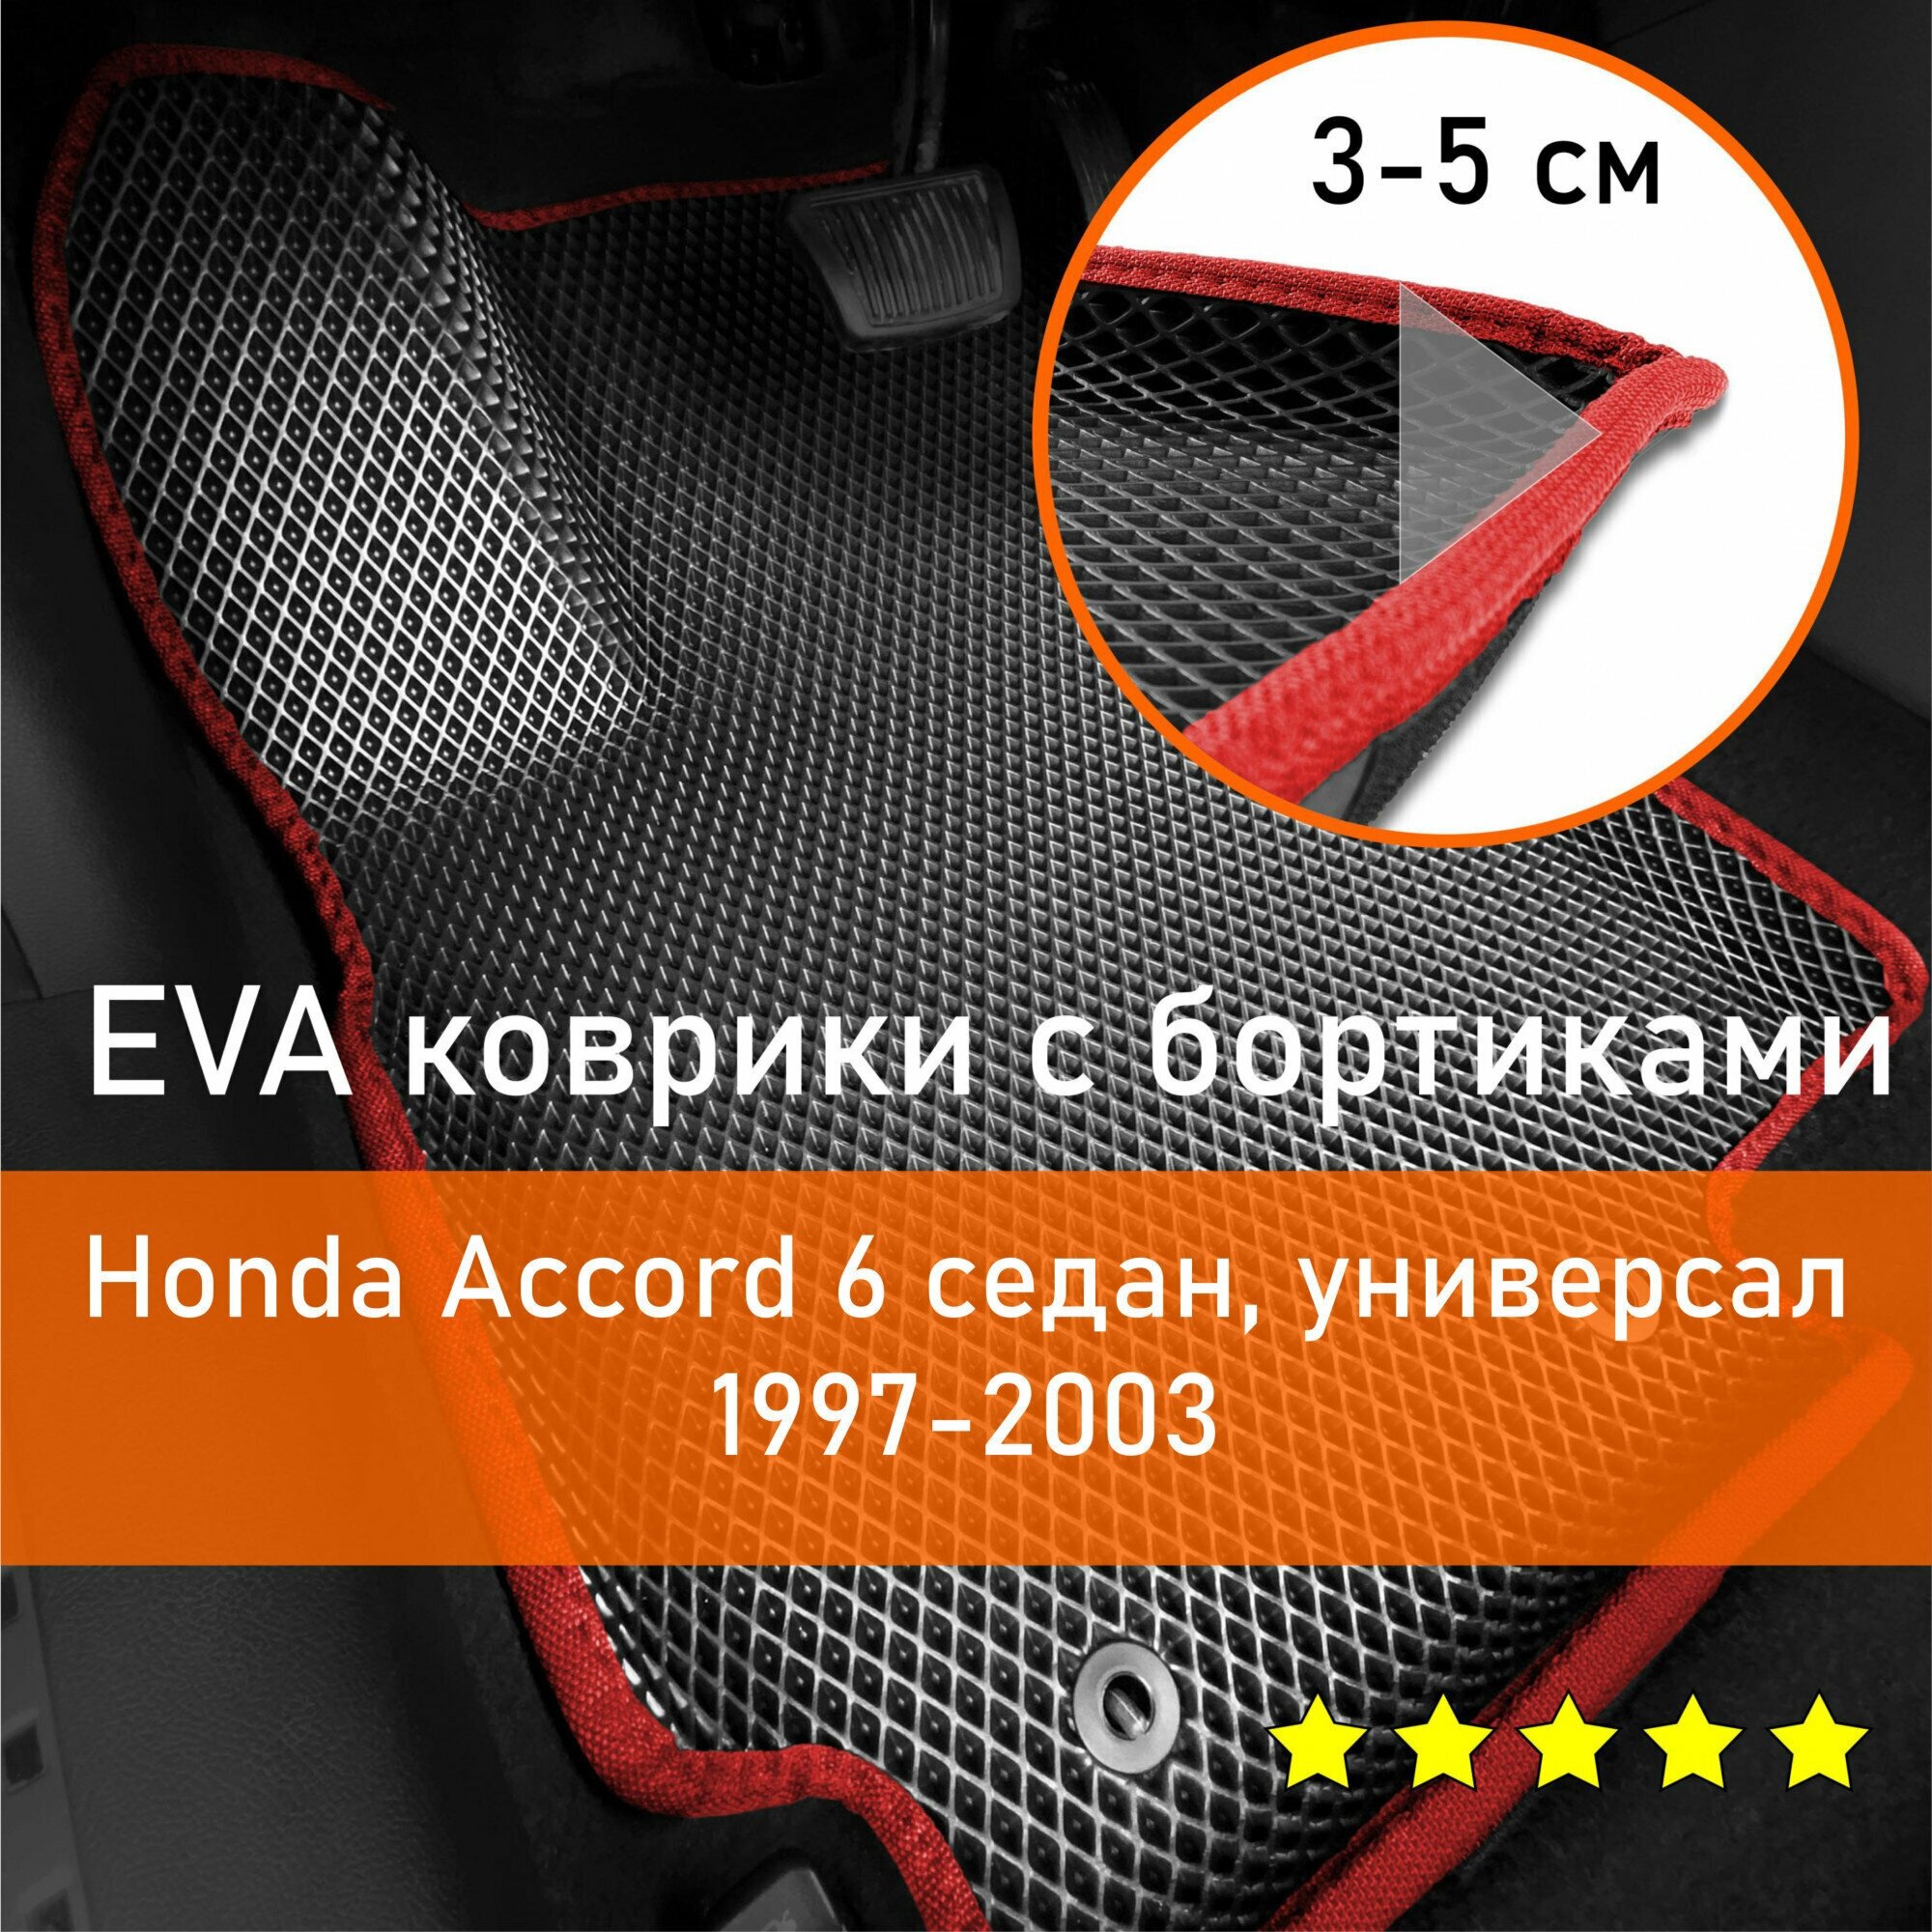 3Д коврики ЕВА (EVA, ЭВА) с бортиками на Honda Accord 6 1997-2003 седан/универсал Хонда Аккорд (Акорд) Левый руль Ромб Черный с красной окантовкой